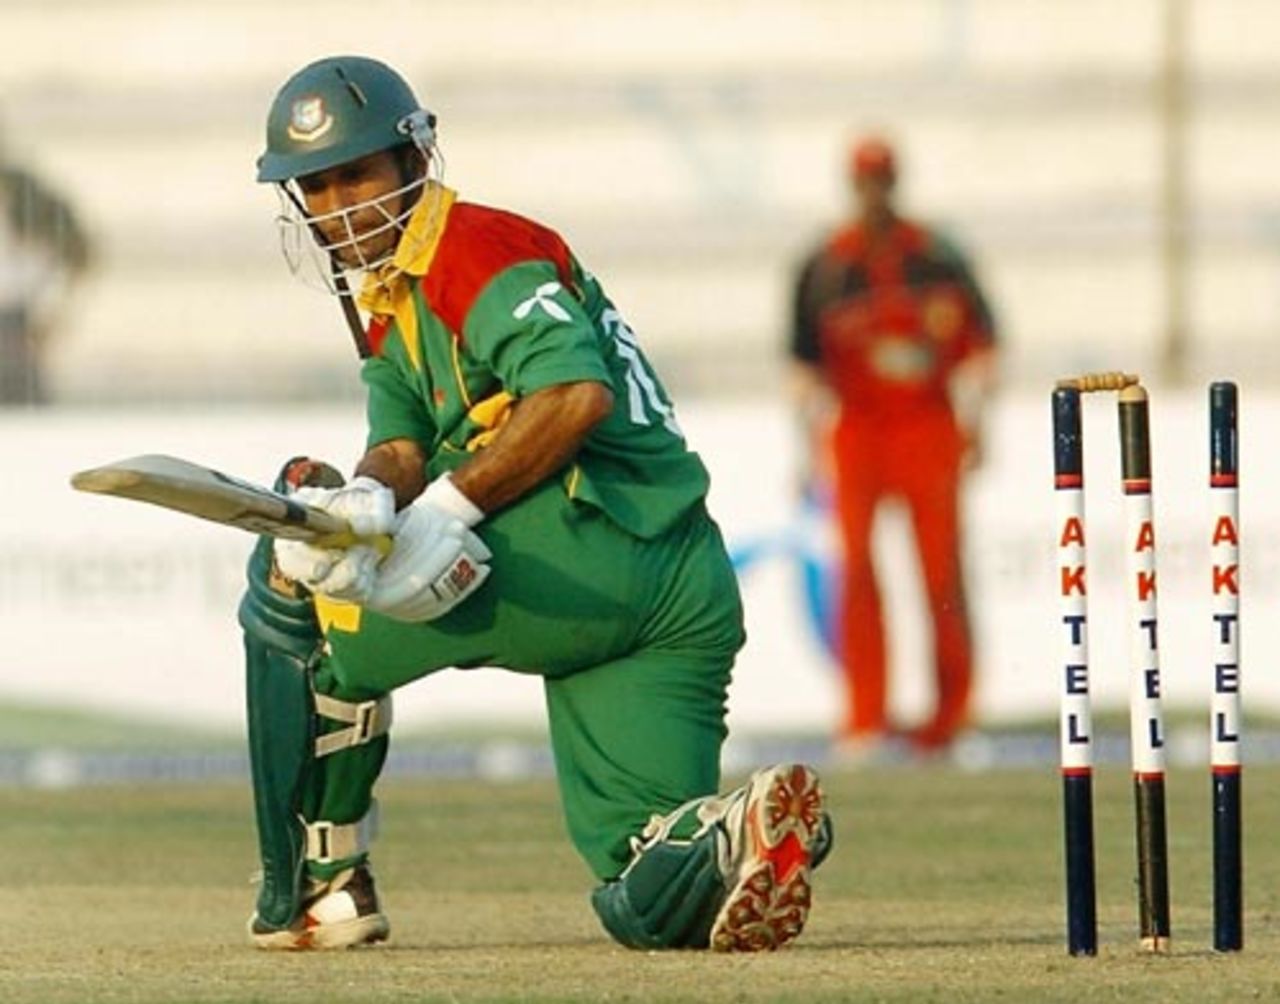 Khaled Mashud inspects the stumps after being bowled, Bangladesh v Zimbabwe, 3rd ODI, Bogra, December 5, 2006